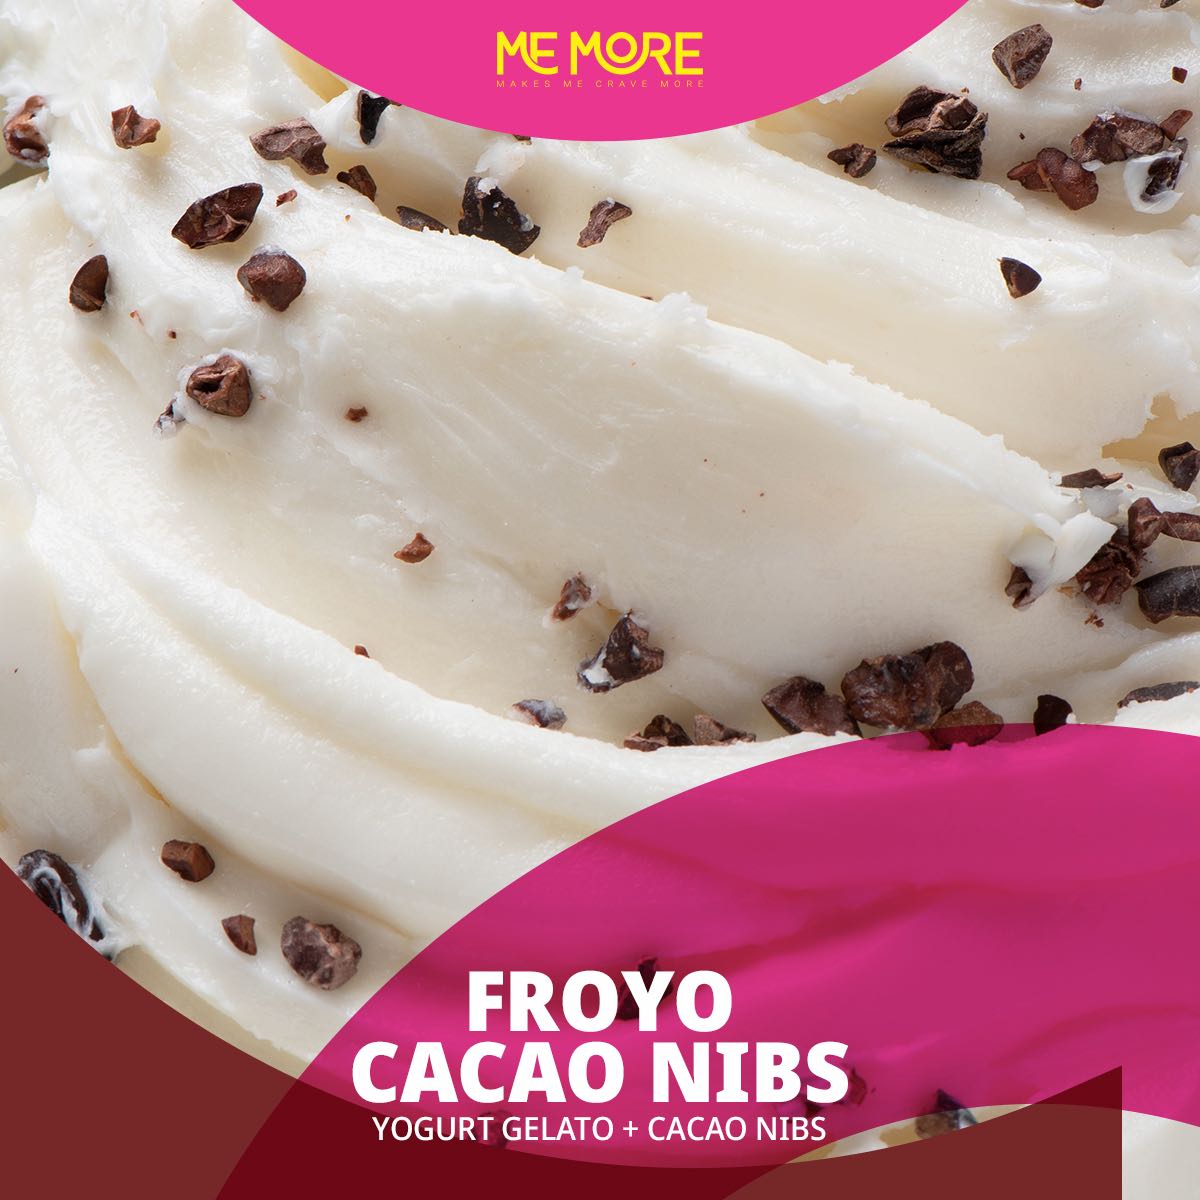 Froyo Cacao Nibs